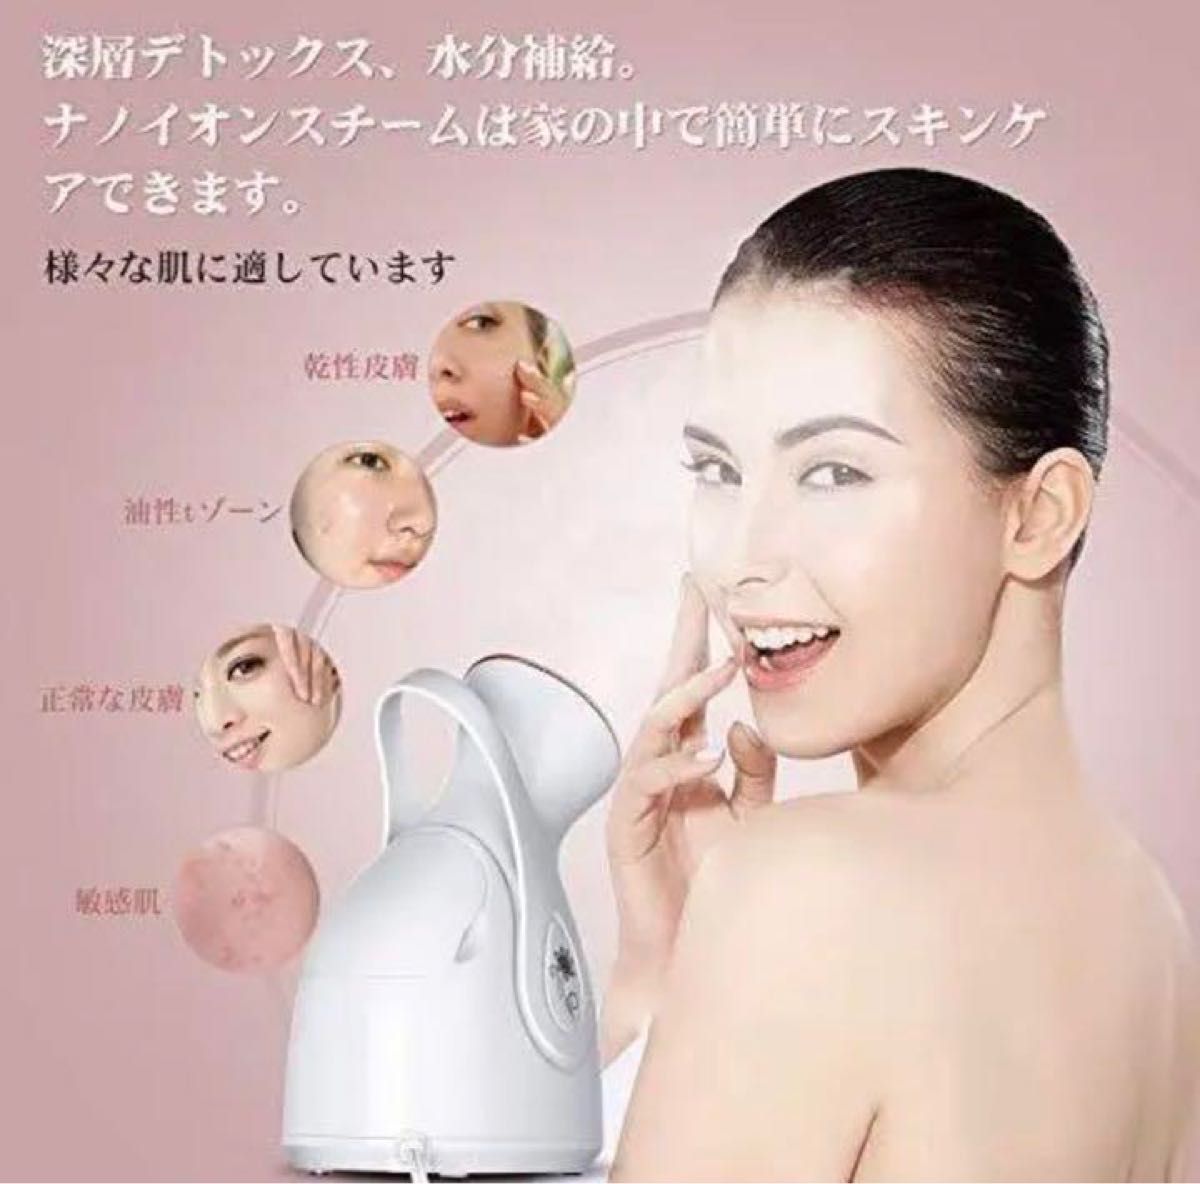 【大特価】 フェイススチーマー 美顔器 各種肌質対応 静音 ニキビ予防